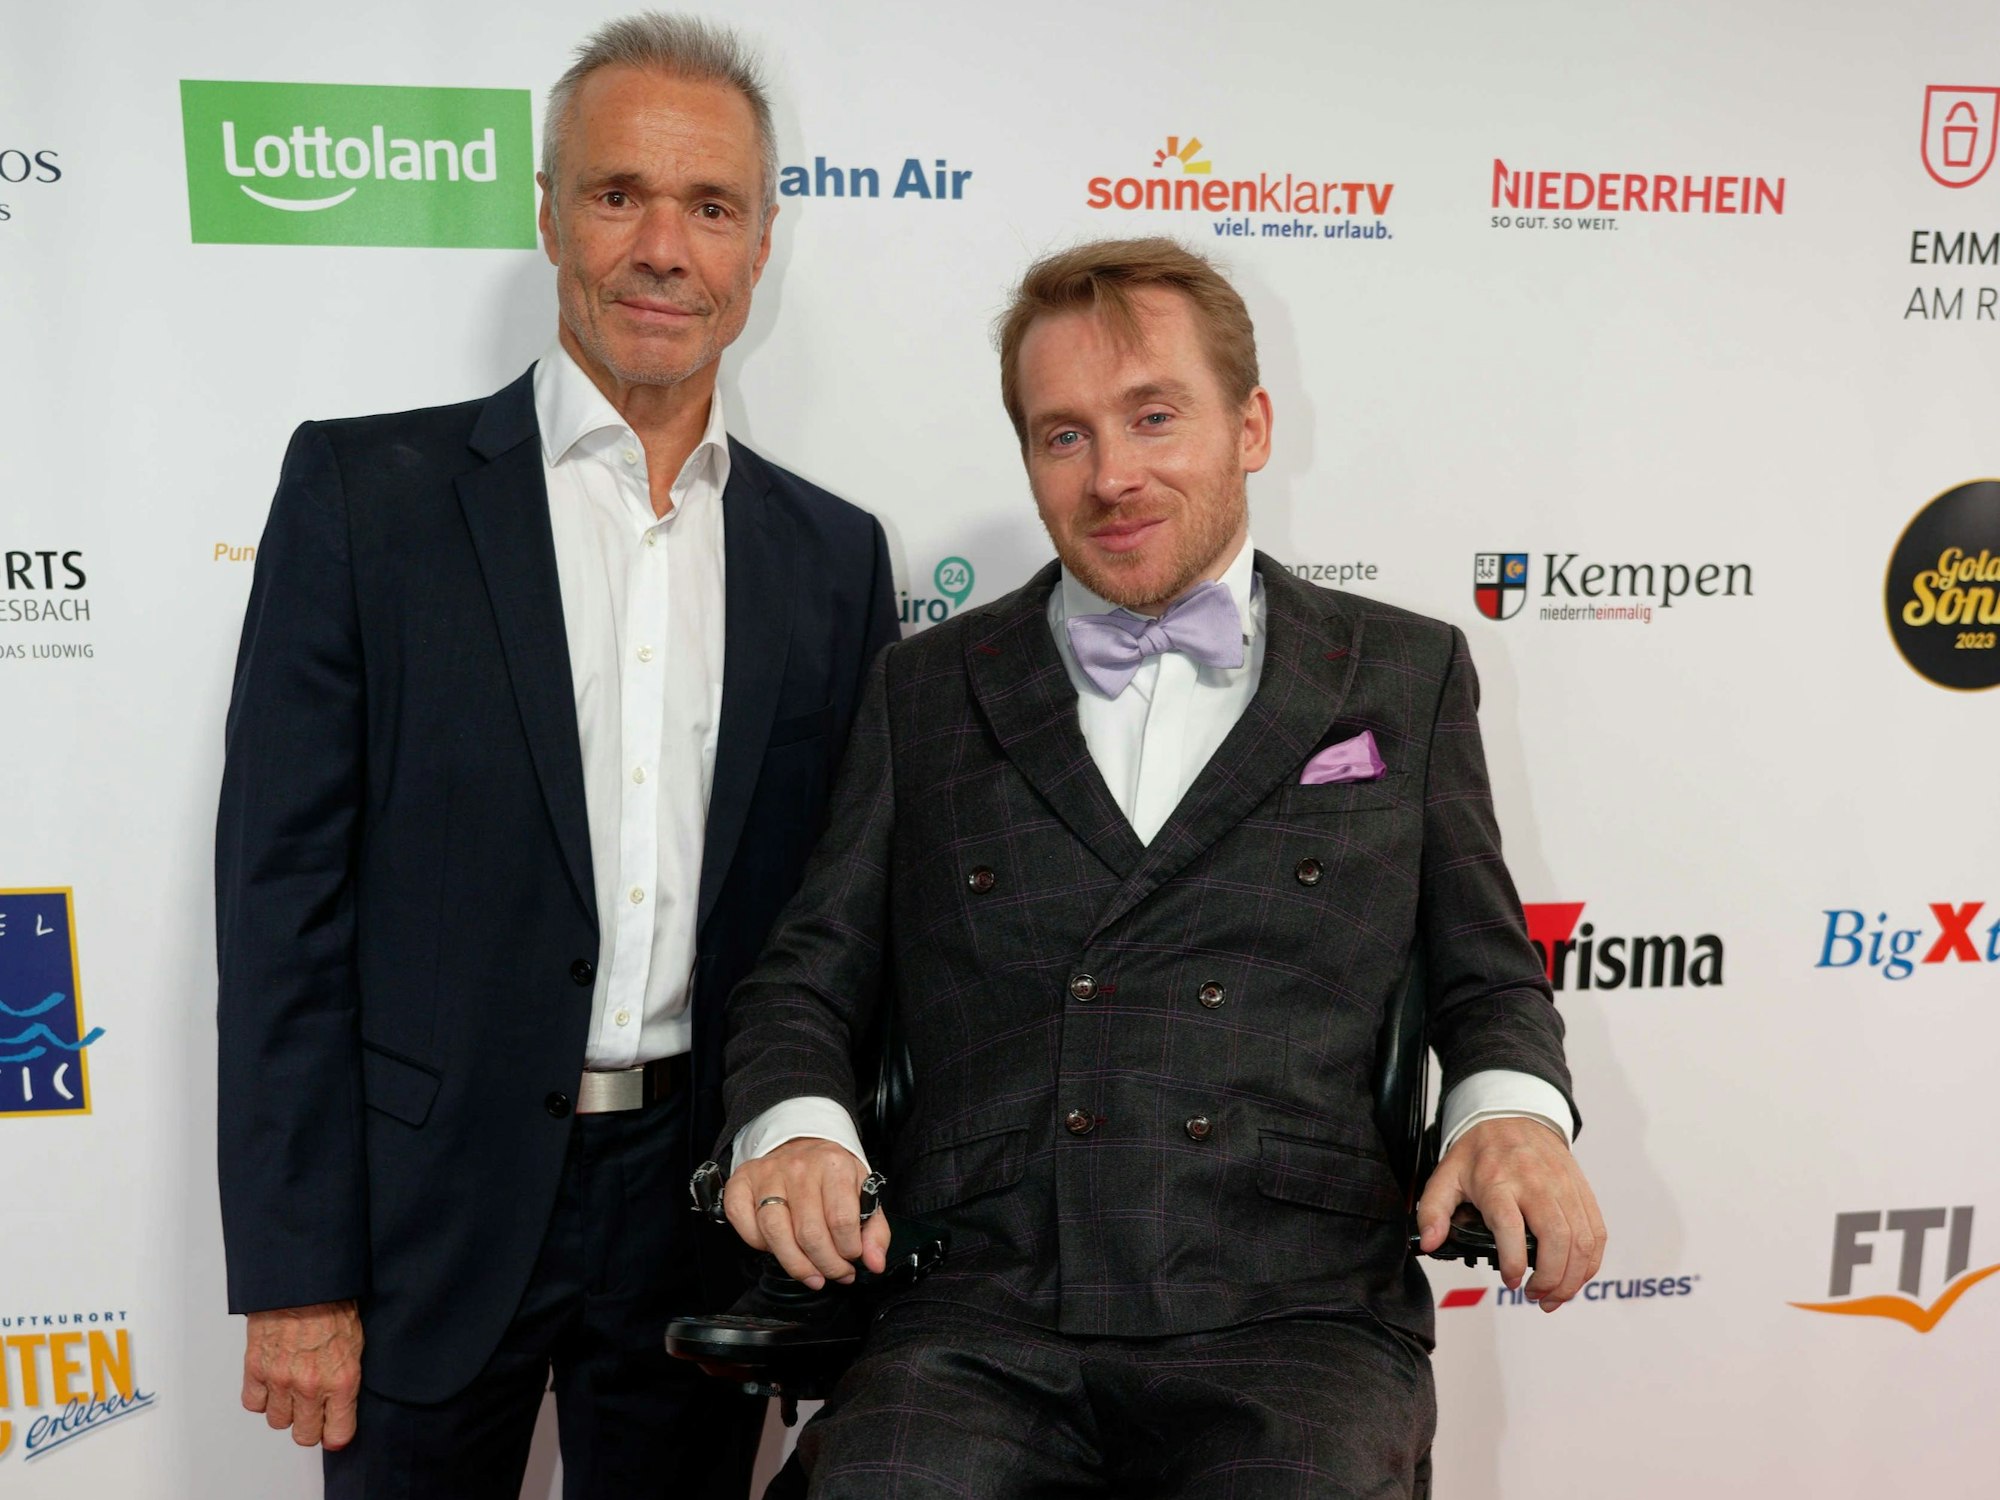 Schauspieler Hannes Jaenicke (l) und Autor Samuel Koch (r) kommen zur Verleihung der "Goldenen Sonne" 2023 des Reisesenders sonnenklar.TV.